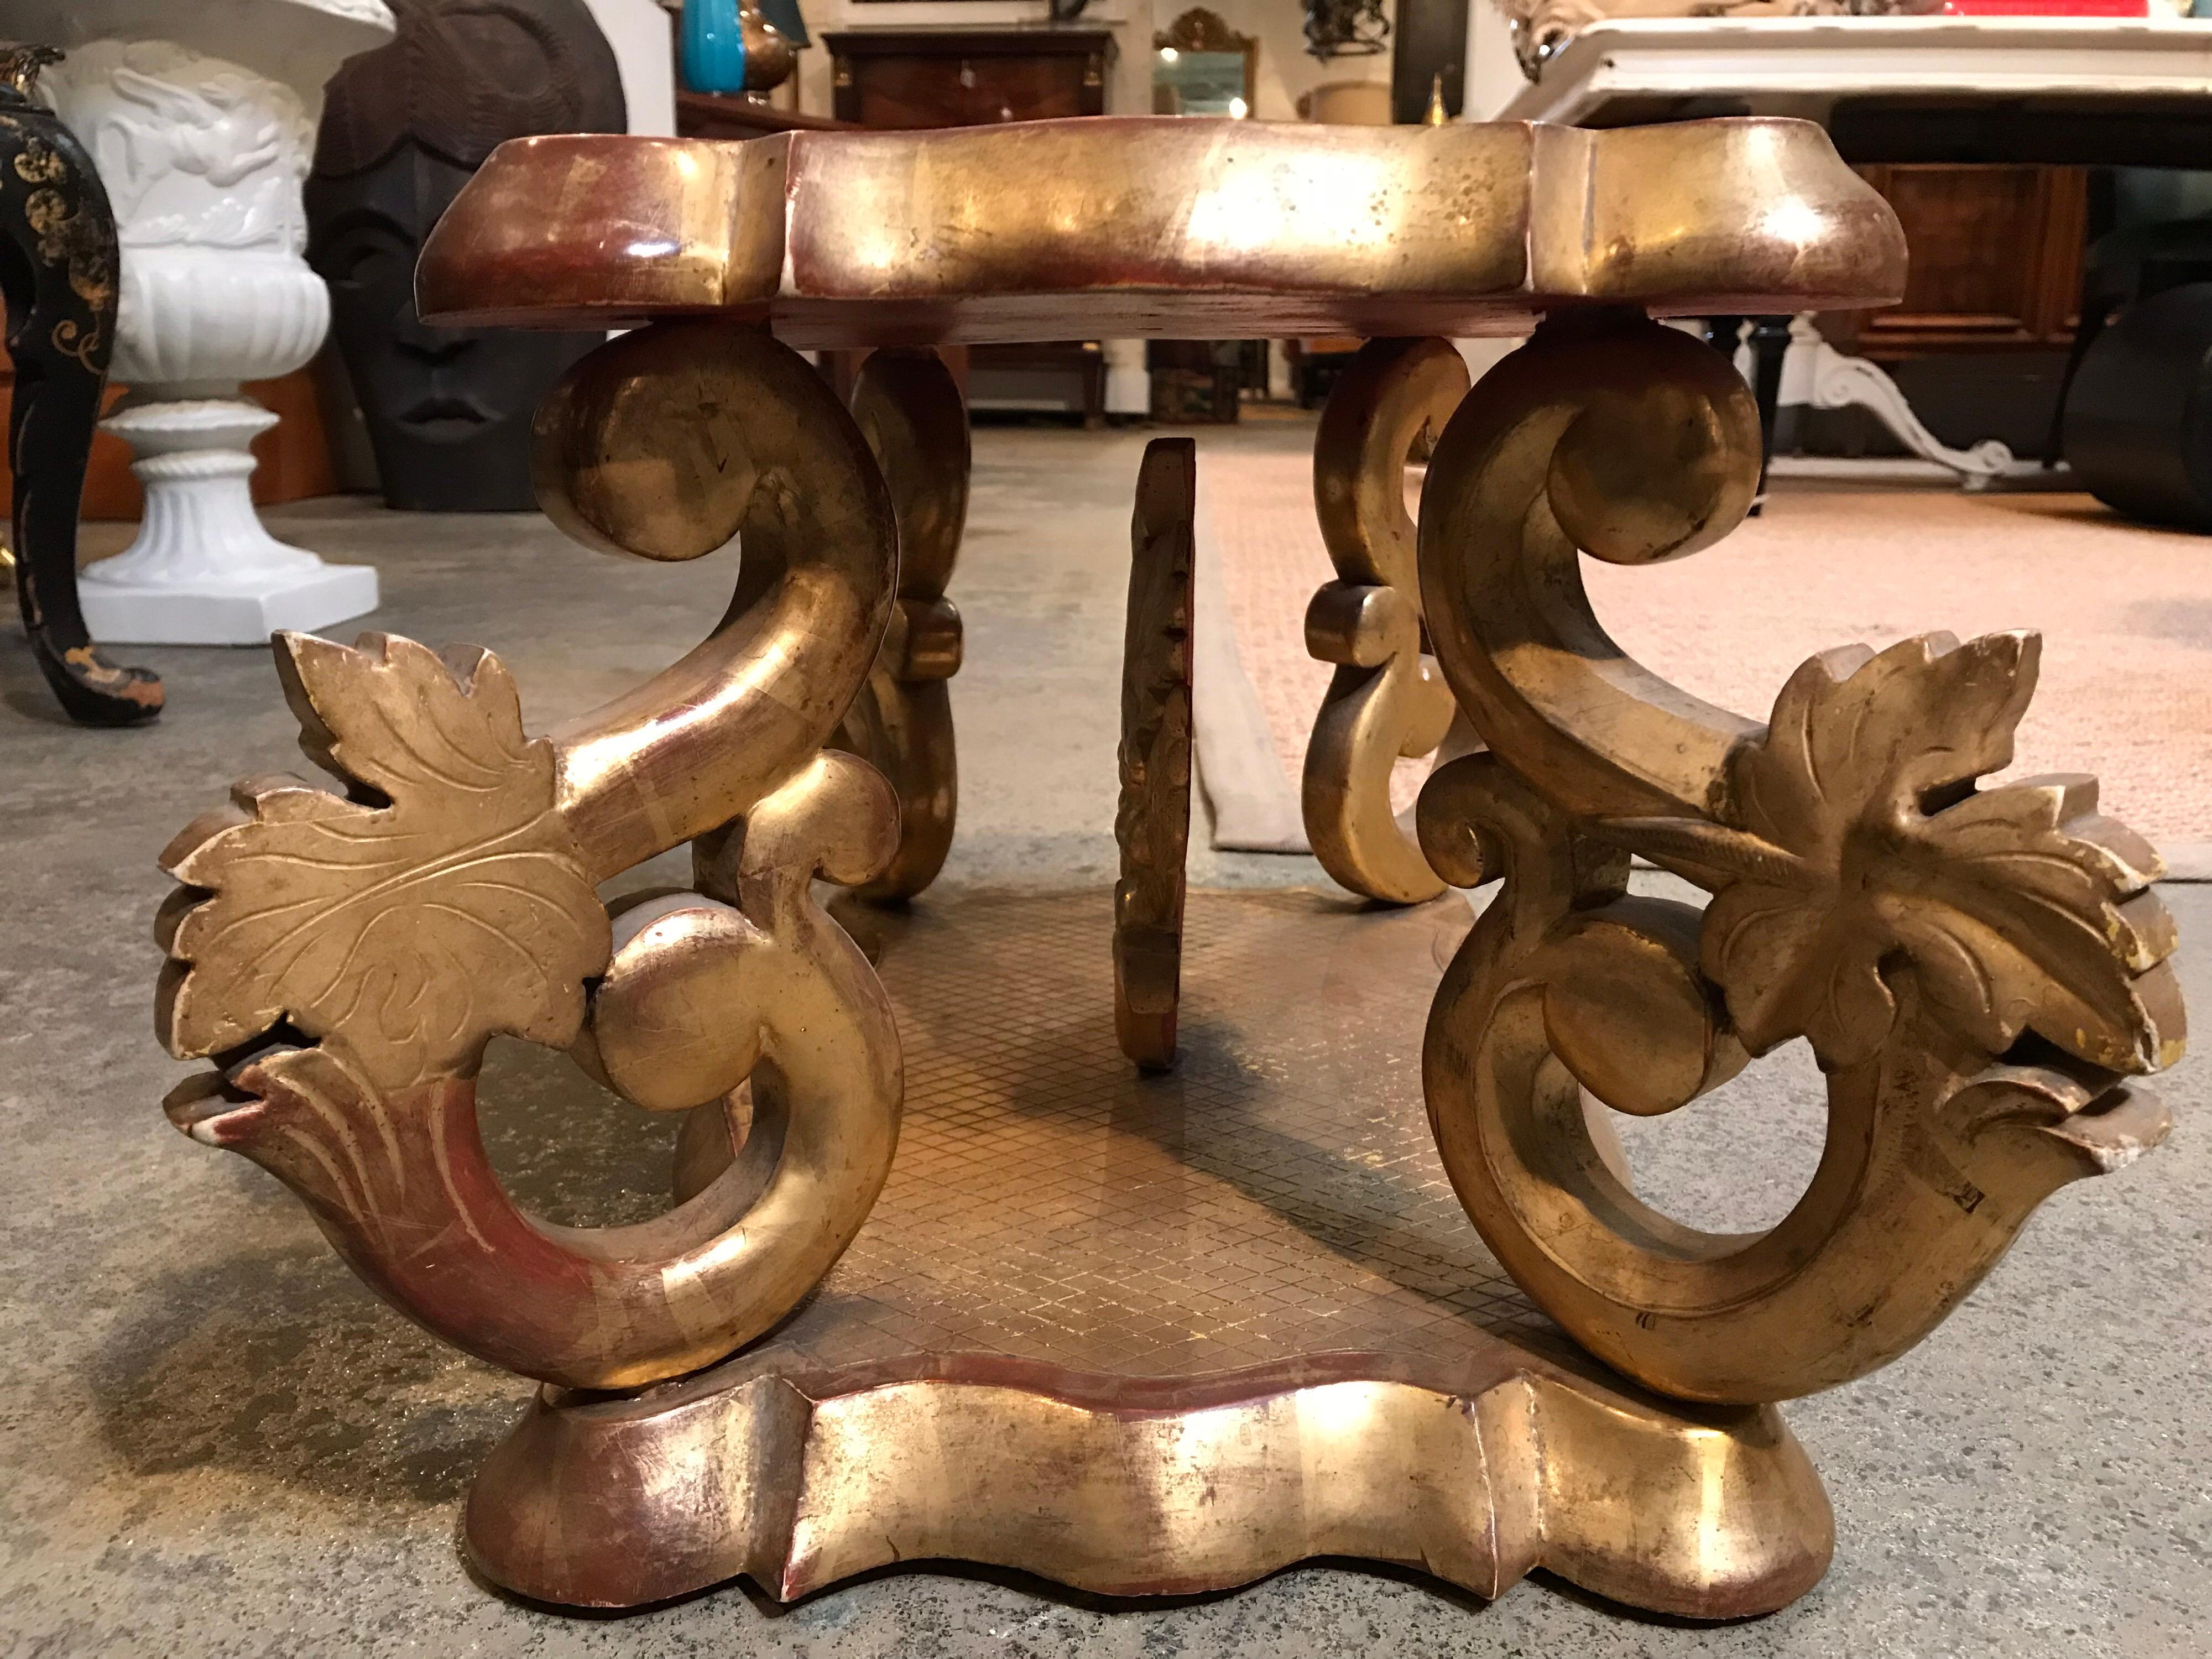 Ce court support italien est doré à l'or fin et a été fabriqué au début du XIXe siècle. Les 4 supports ont été sculptés en forme de serpentin avec une feuille sur chacun d'eux. Il y a une sorte de relique à l'intérieur, également dorée. La couche